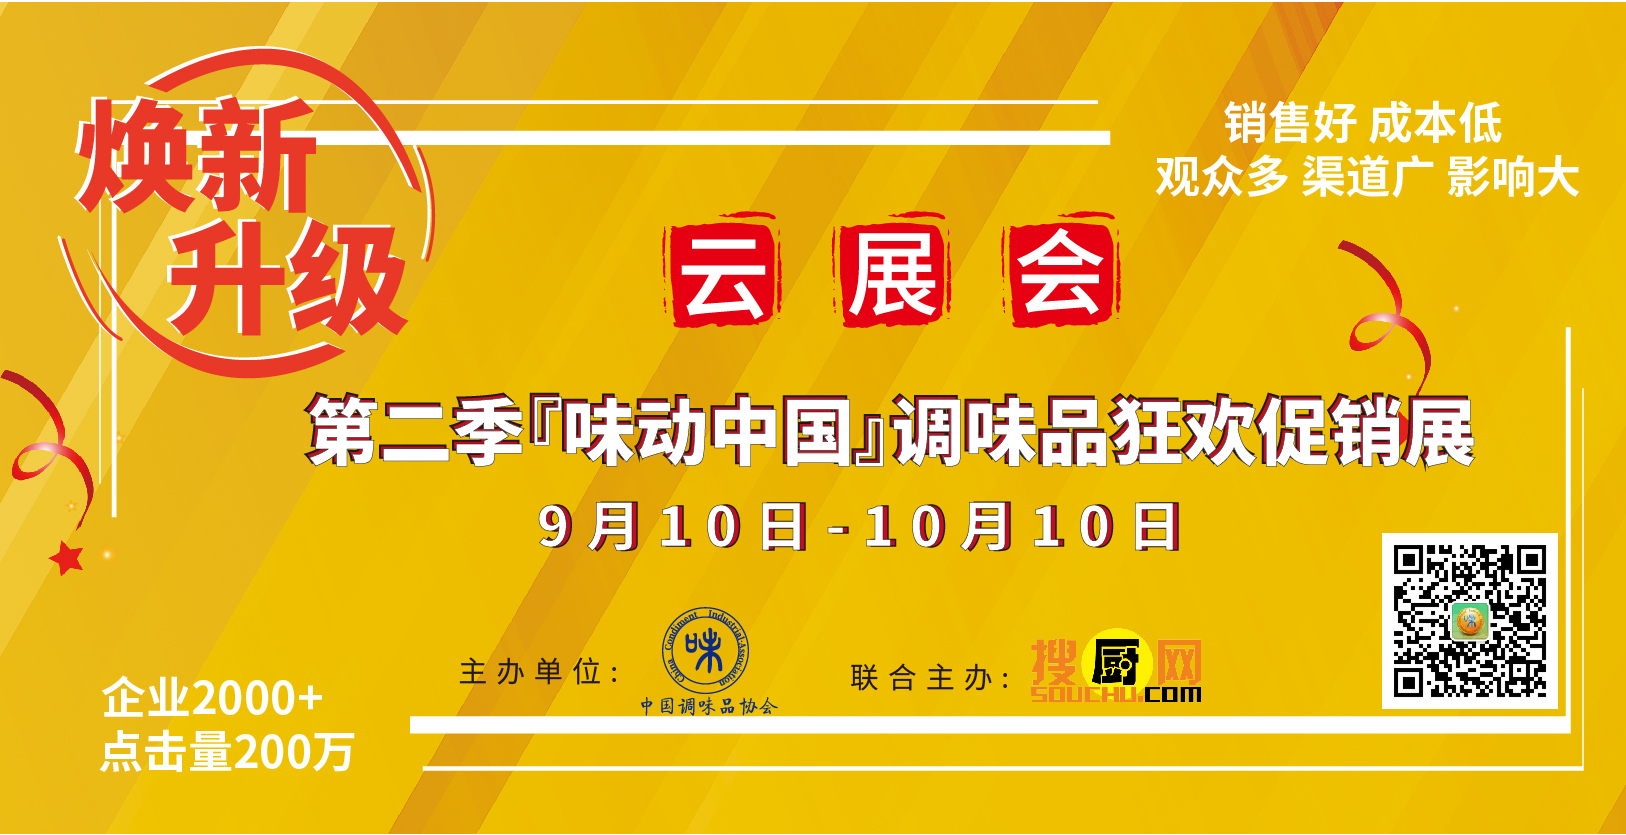 第二季“味动中国”调味品云展会将于9月10日全网盛大开幕